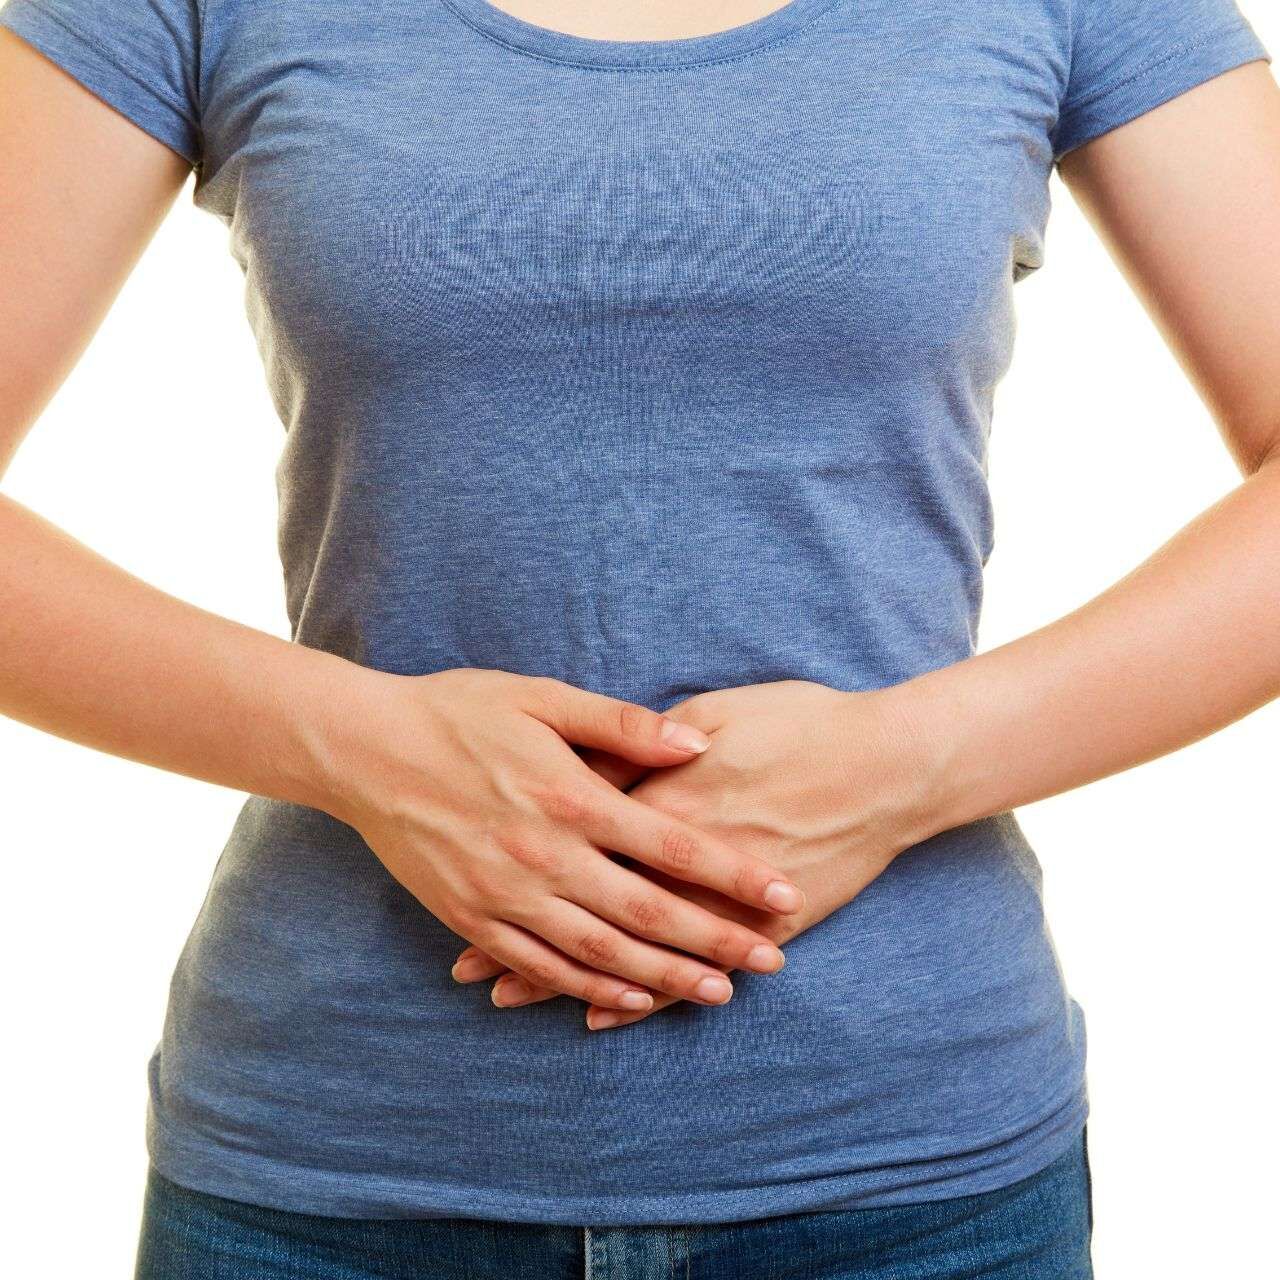 L’ernia iatale può causare dolori nel tratto gastrointestinale